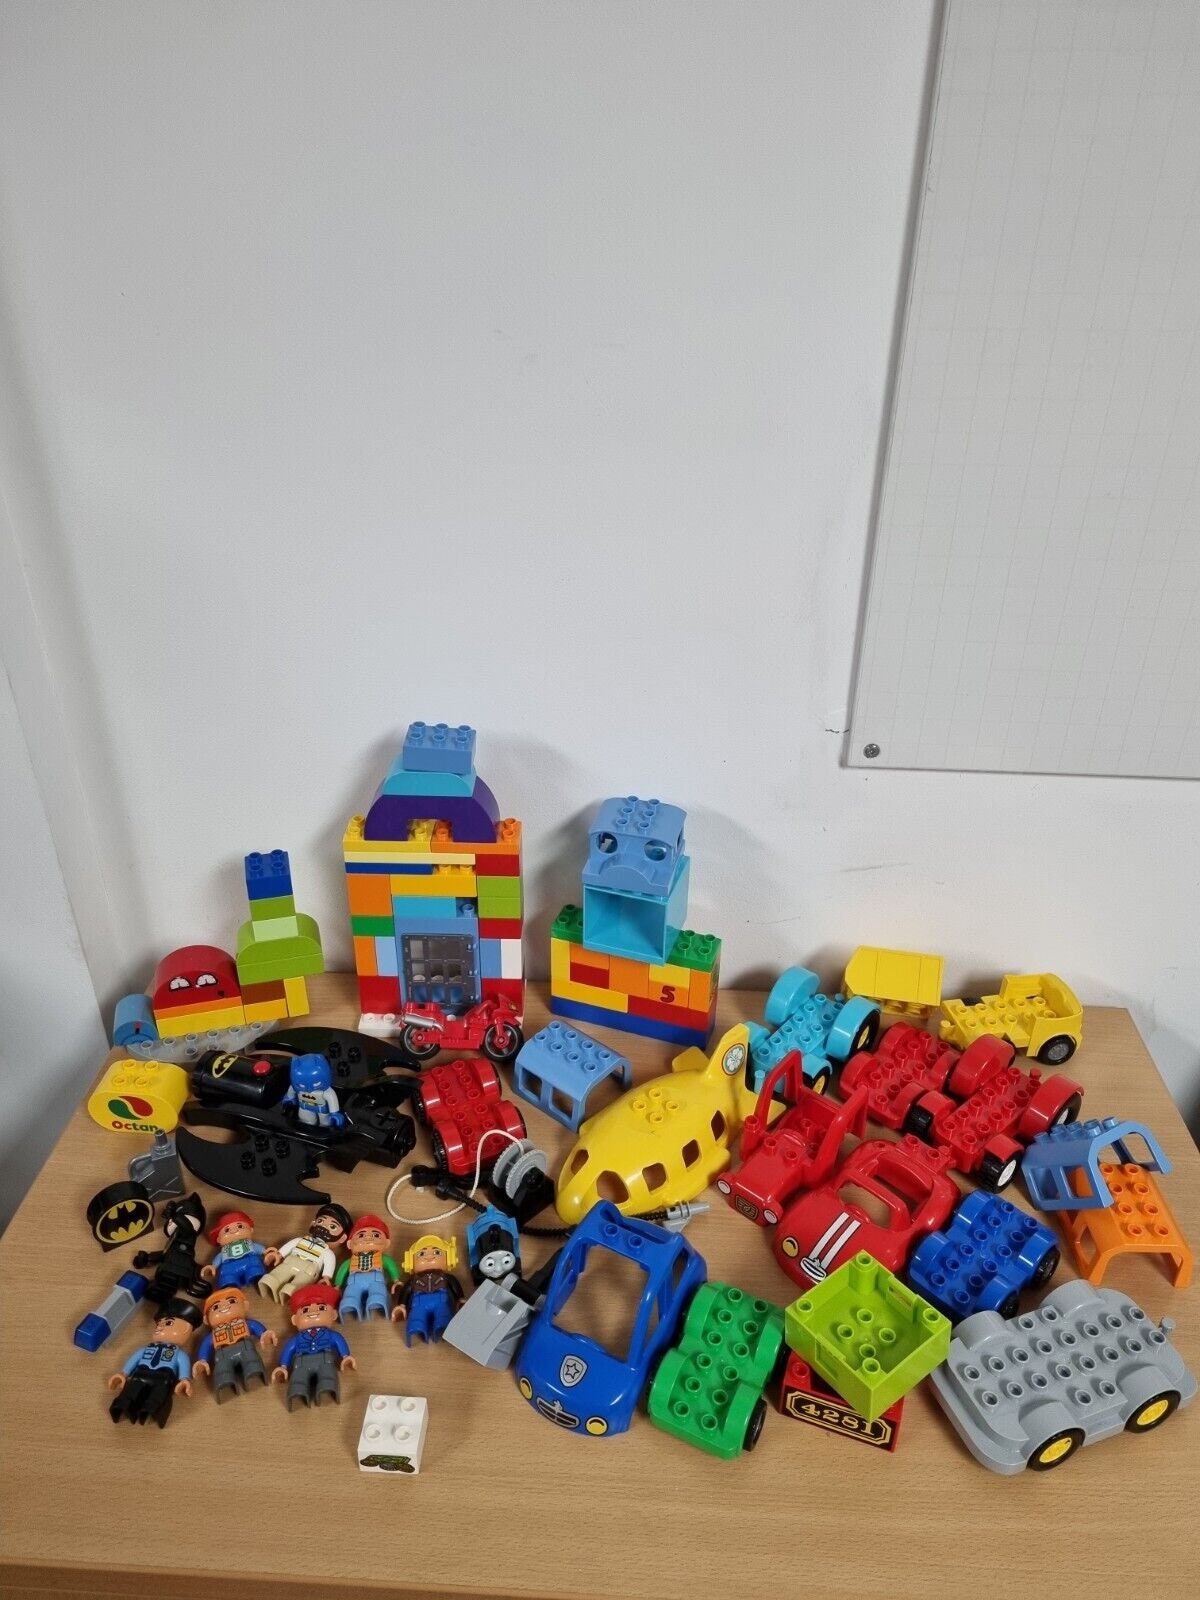 Petit baril Lego Duplo - jouets rétro jeux de société figurines et